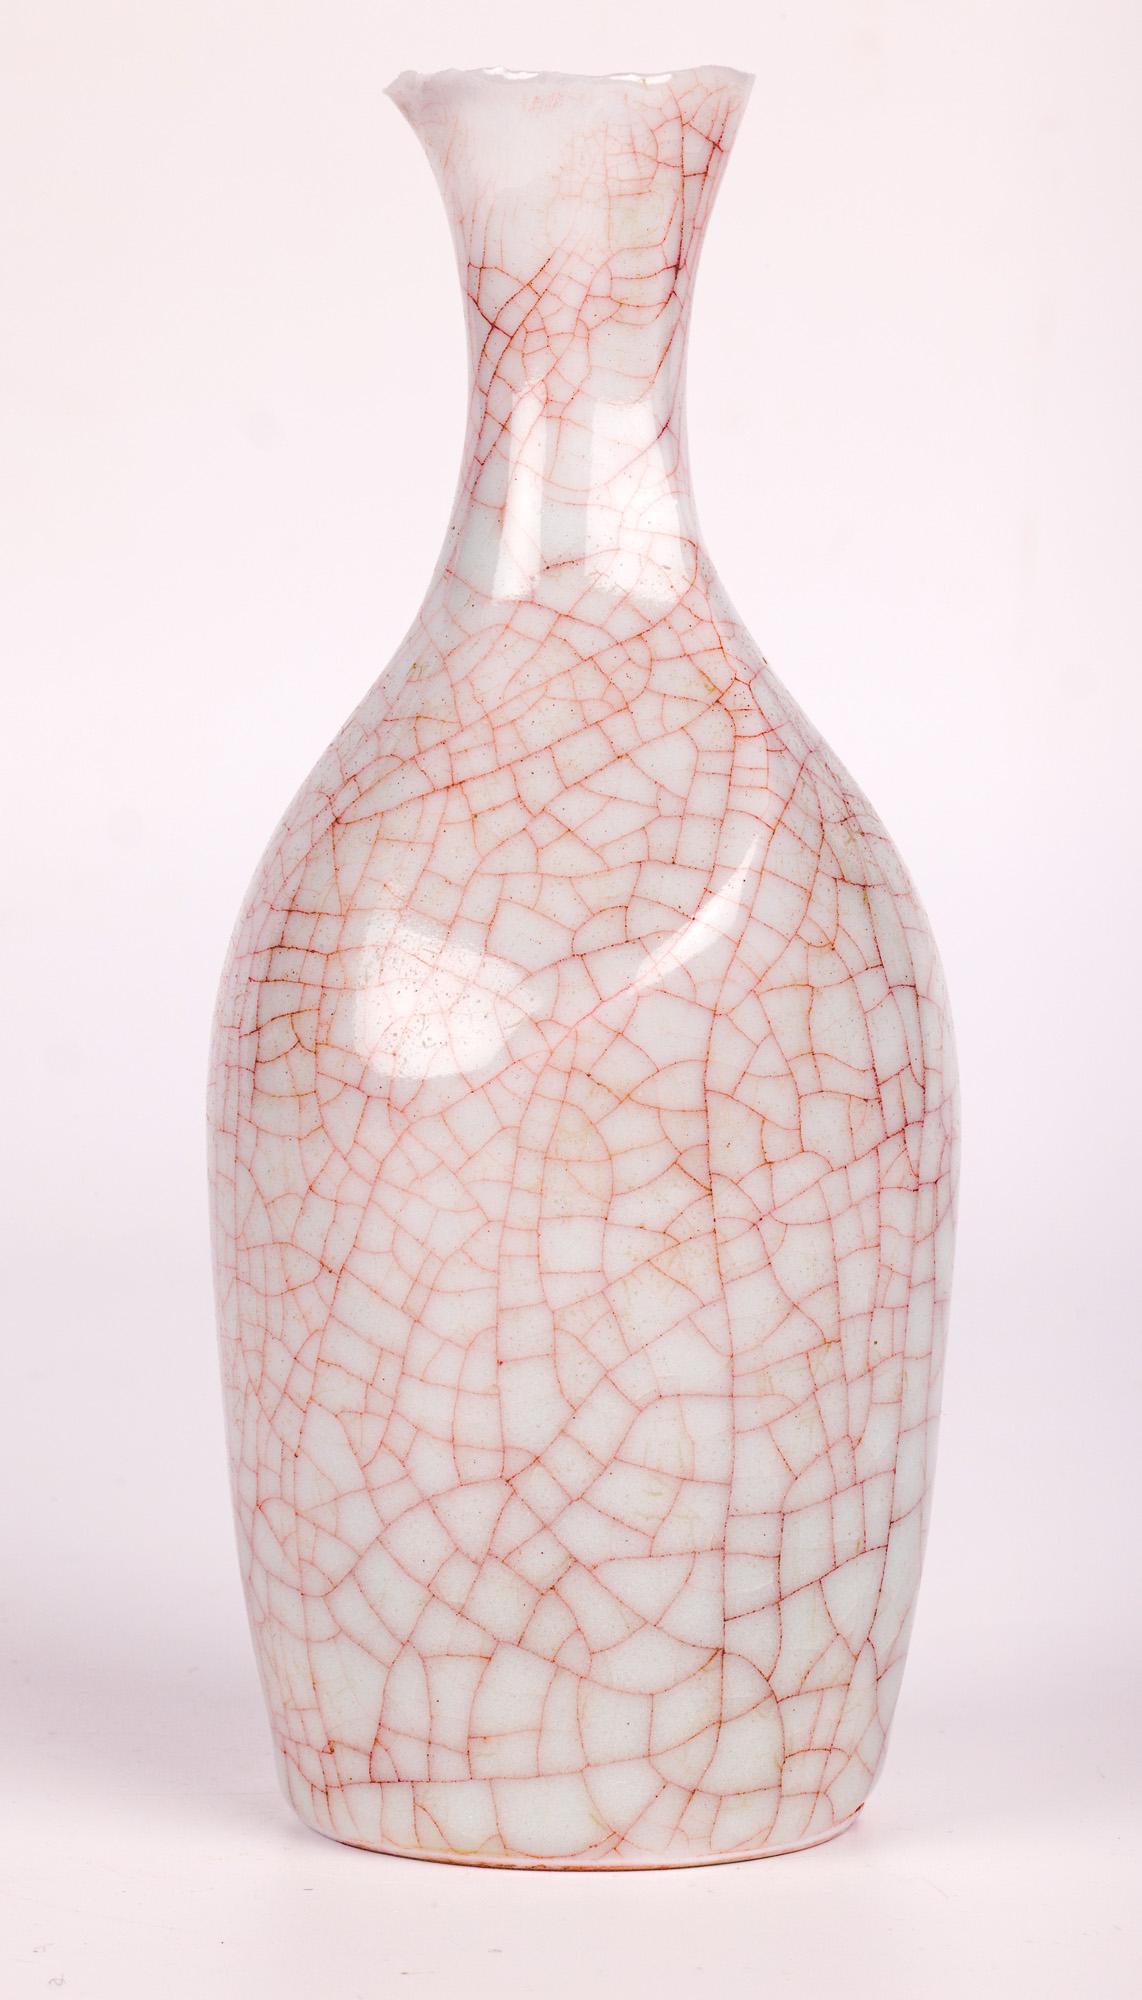 Sonia Lewis Studio Ceramic Craquelure Glazed Bottle Vase For Sale 8